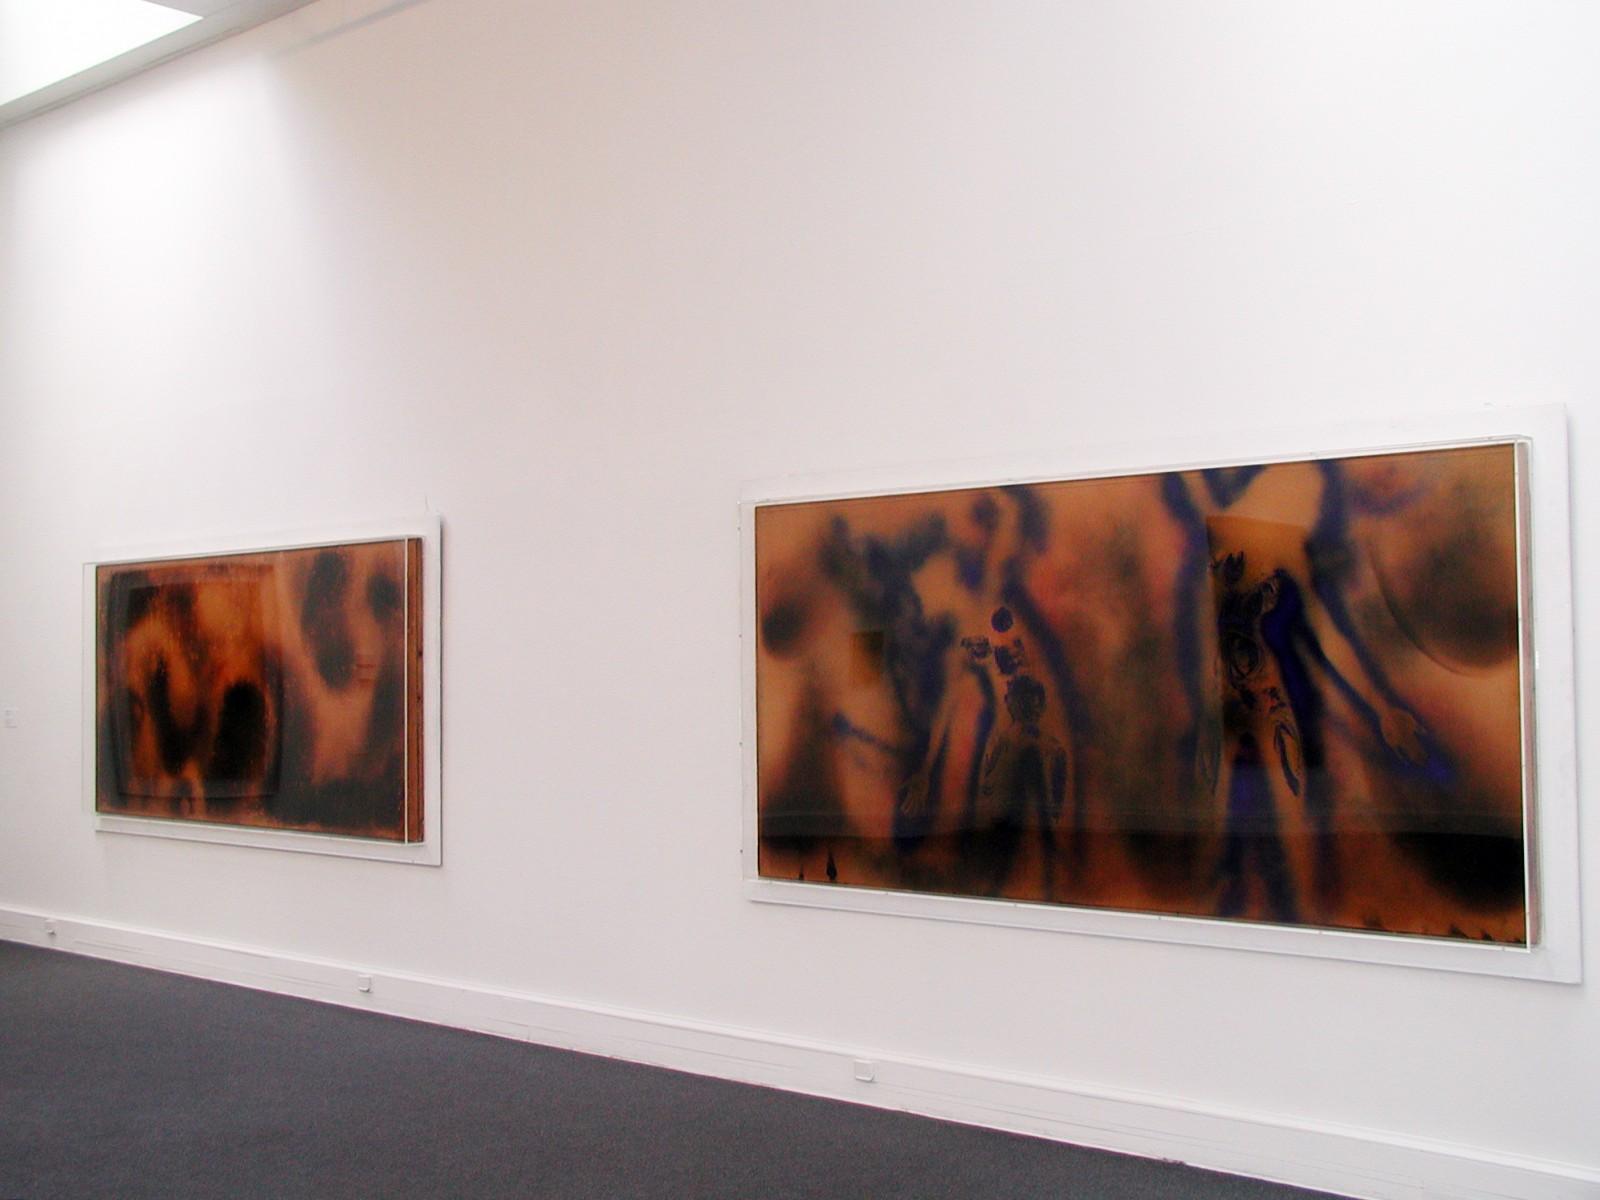 View of the exhibition, "Yves Klein, "La vita, la vita stessa che é l'arte assoluta", Museo Pecci, 2000